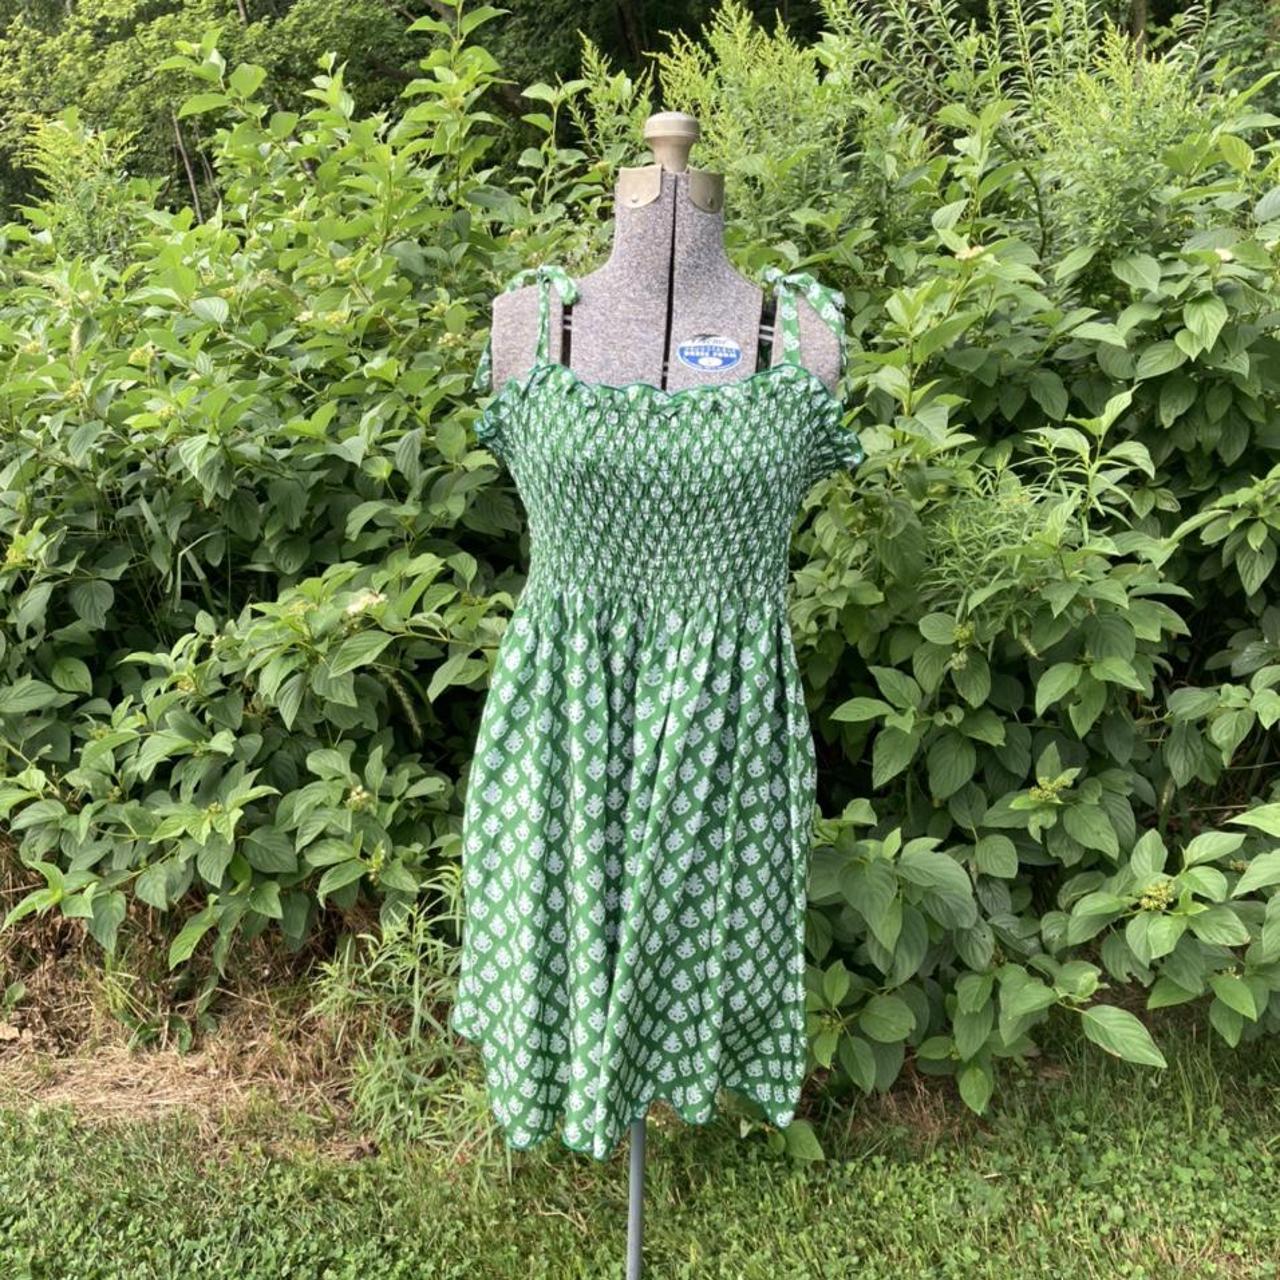 2007 Anna Sui 100% silk green summer sundress with... - Depop